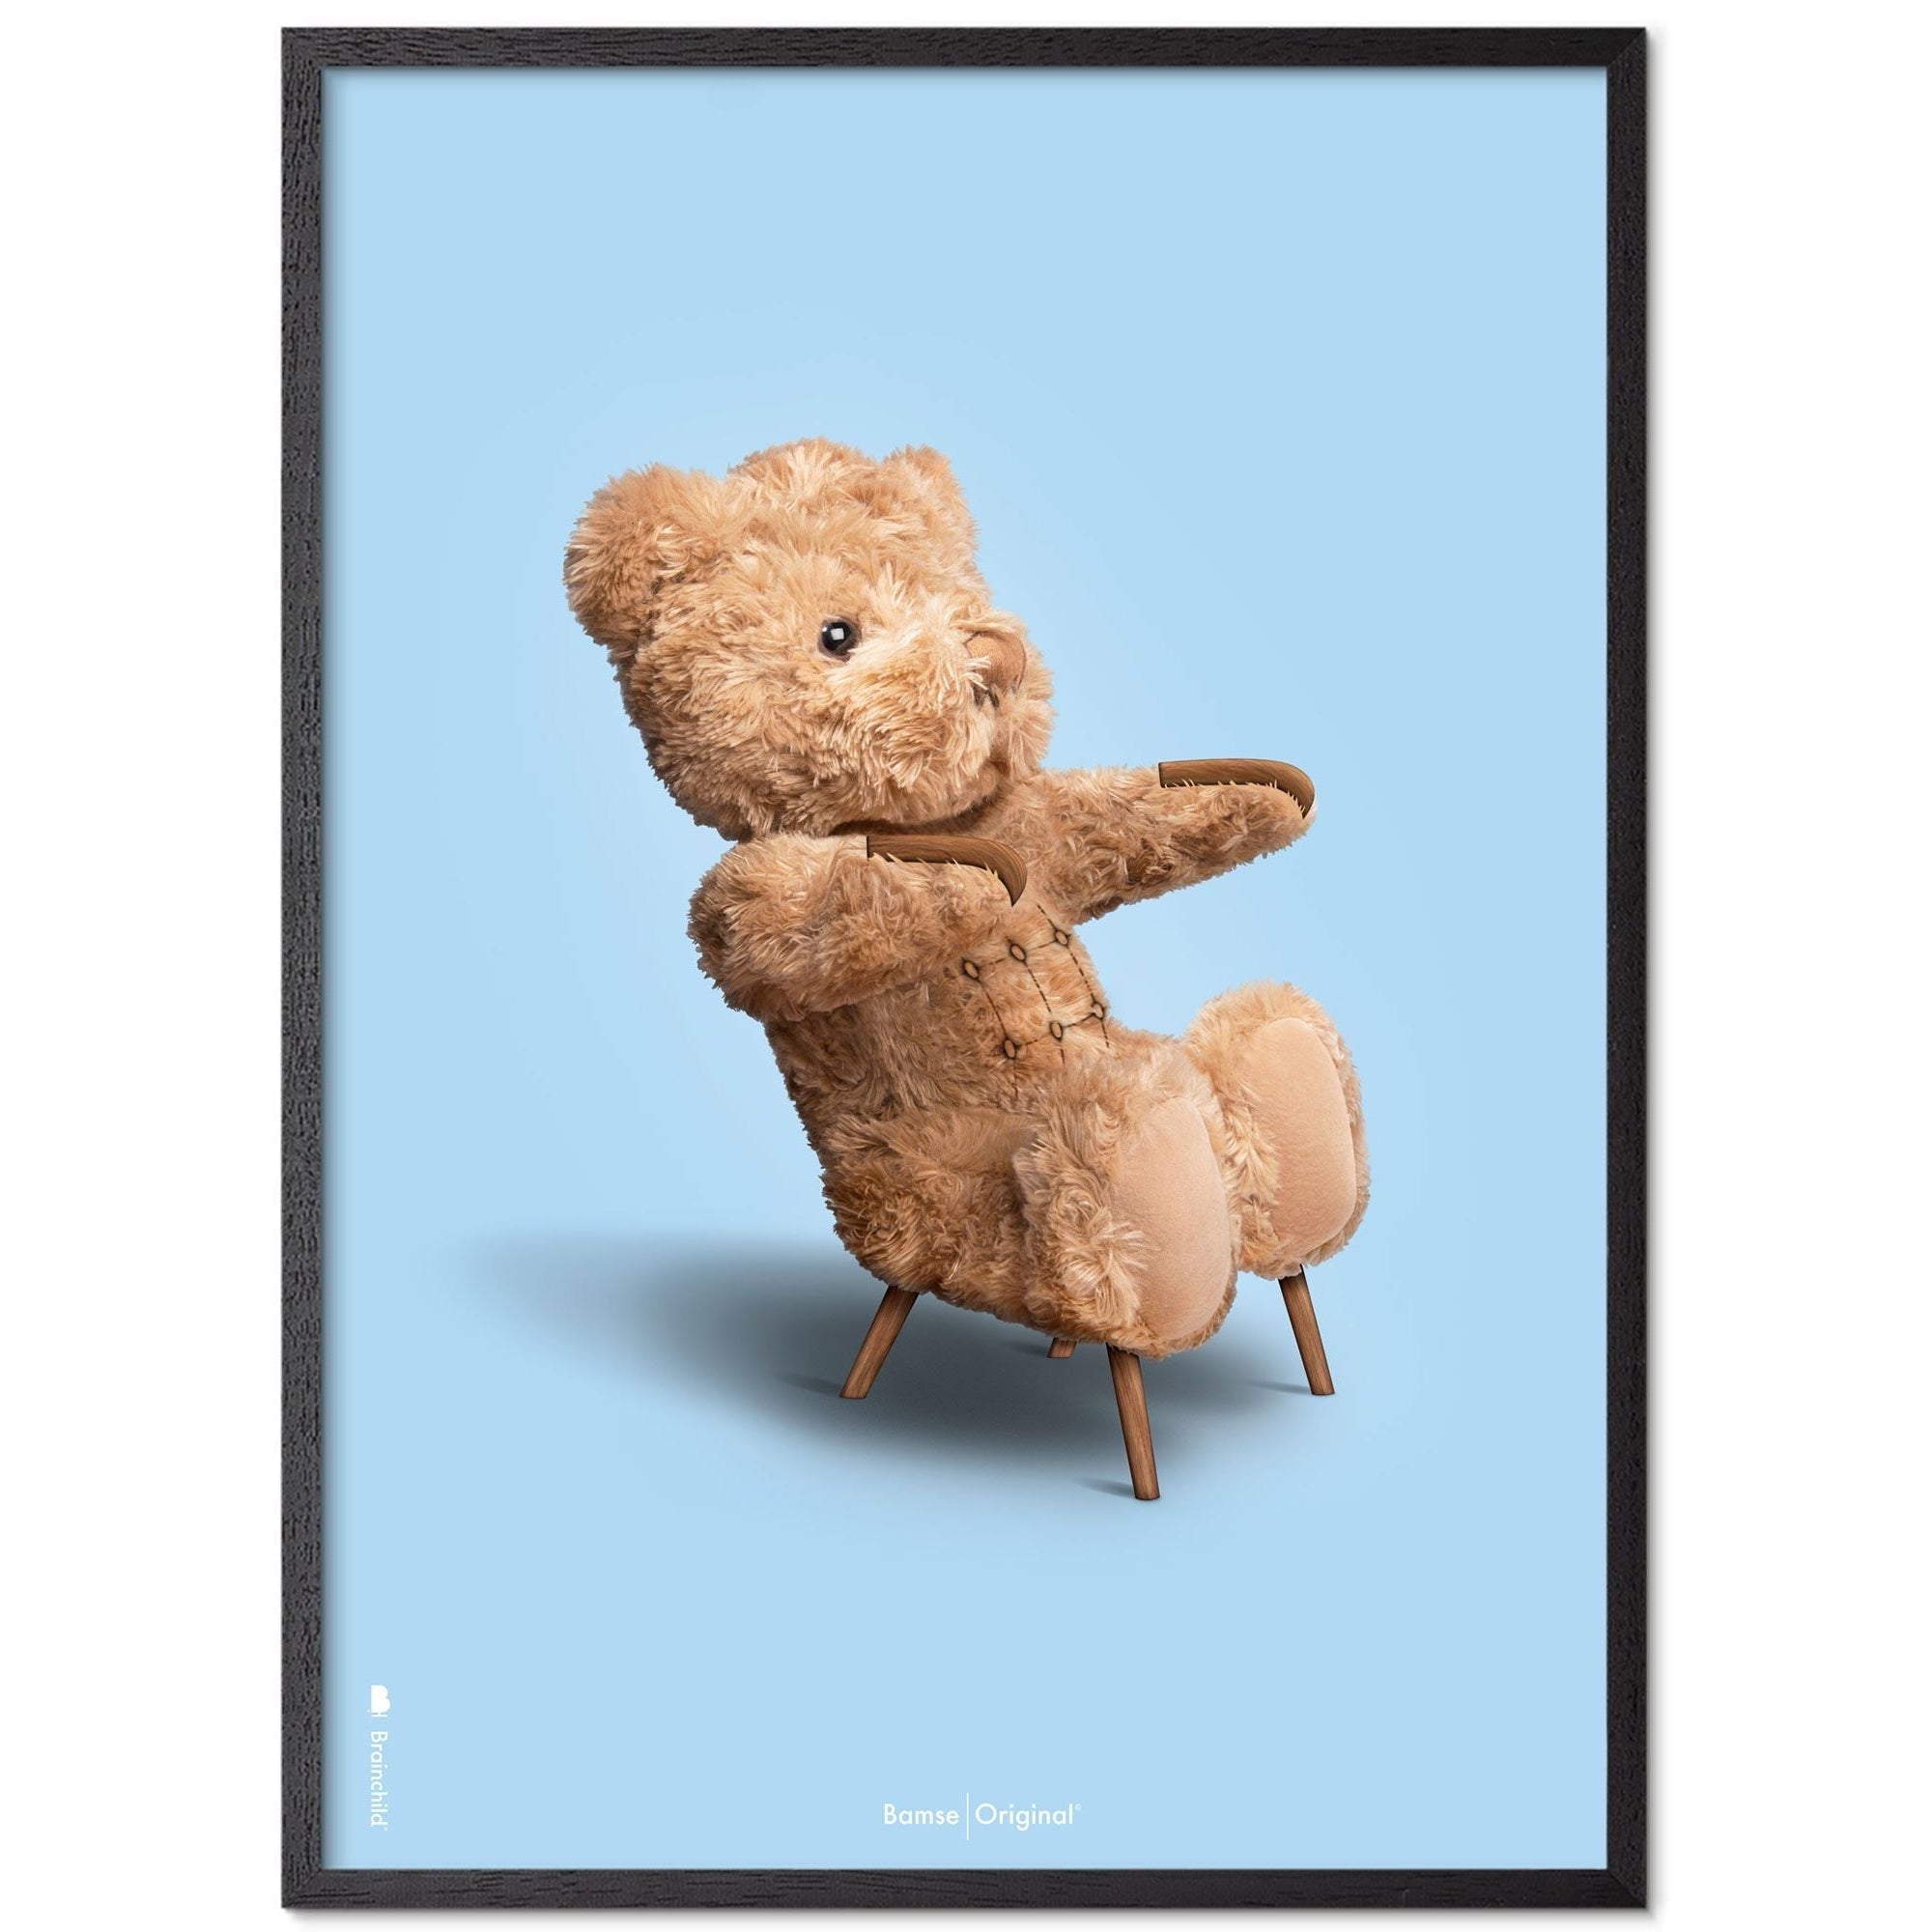 Brainchild Teddy Bear Classic plakát z plakátu vyrobený z černého lakovaného dřeva 70x100 cm, světle modré pozadí